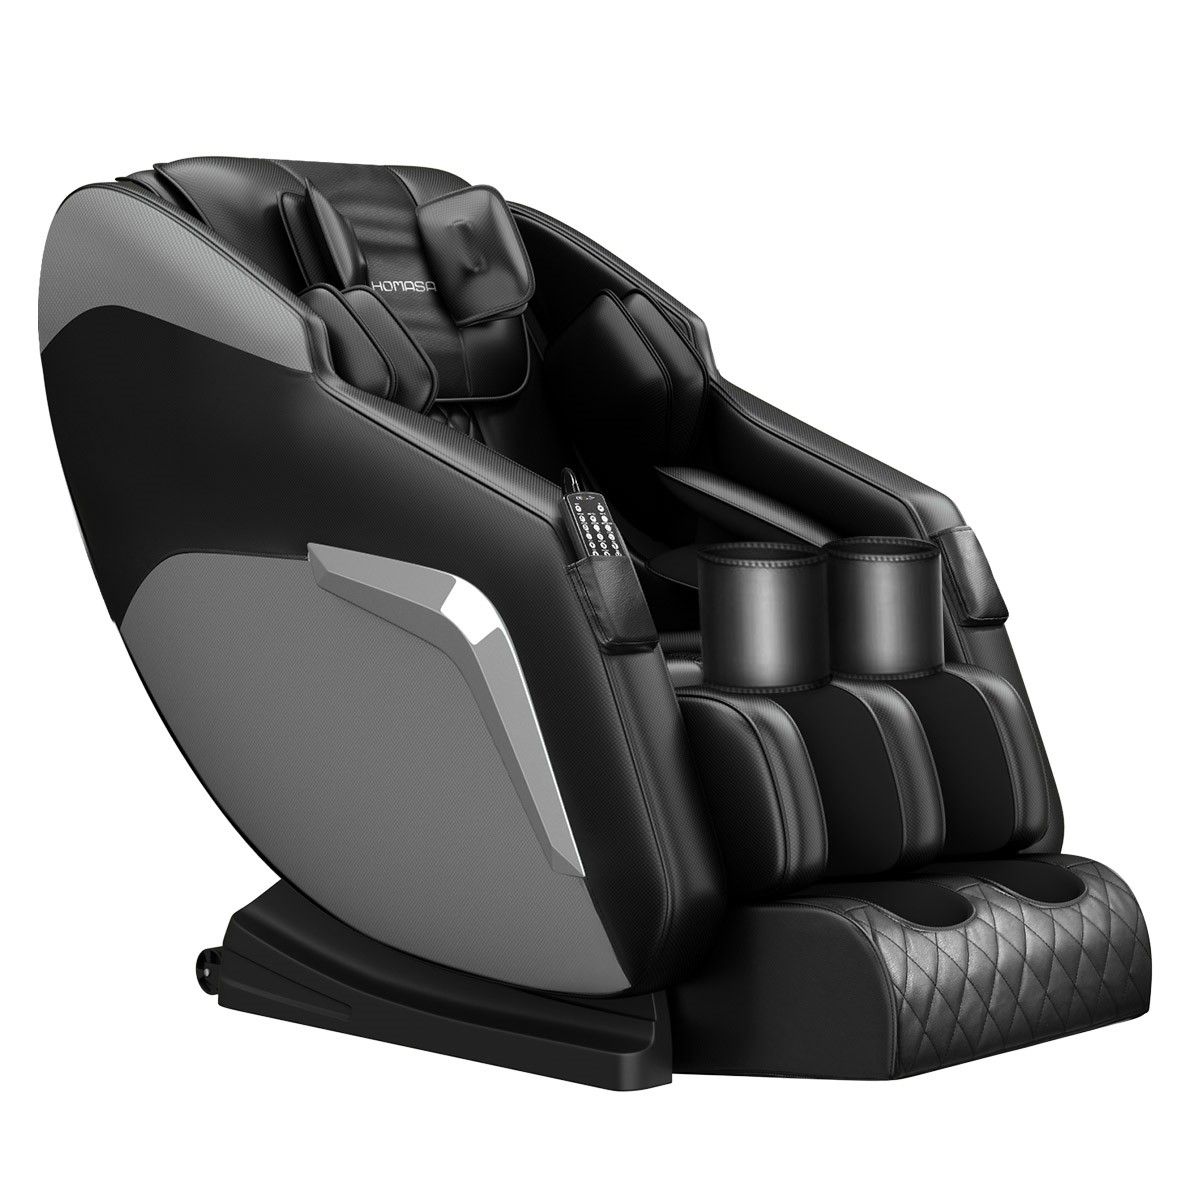 HOMASA Black Full body Massage Chair Zero Gravity Recliner | Buy